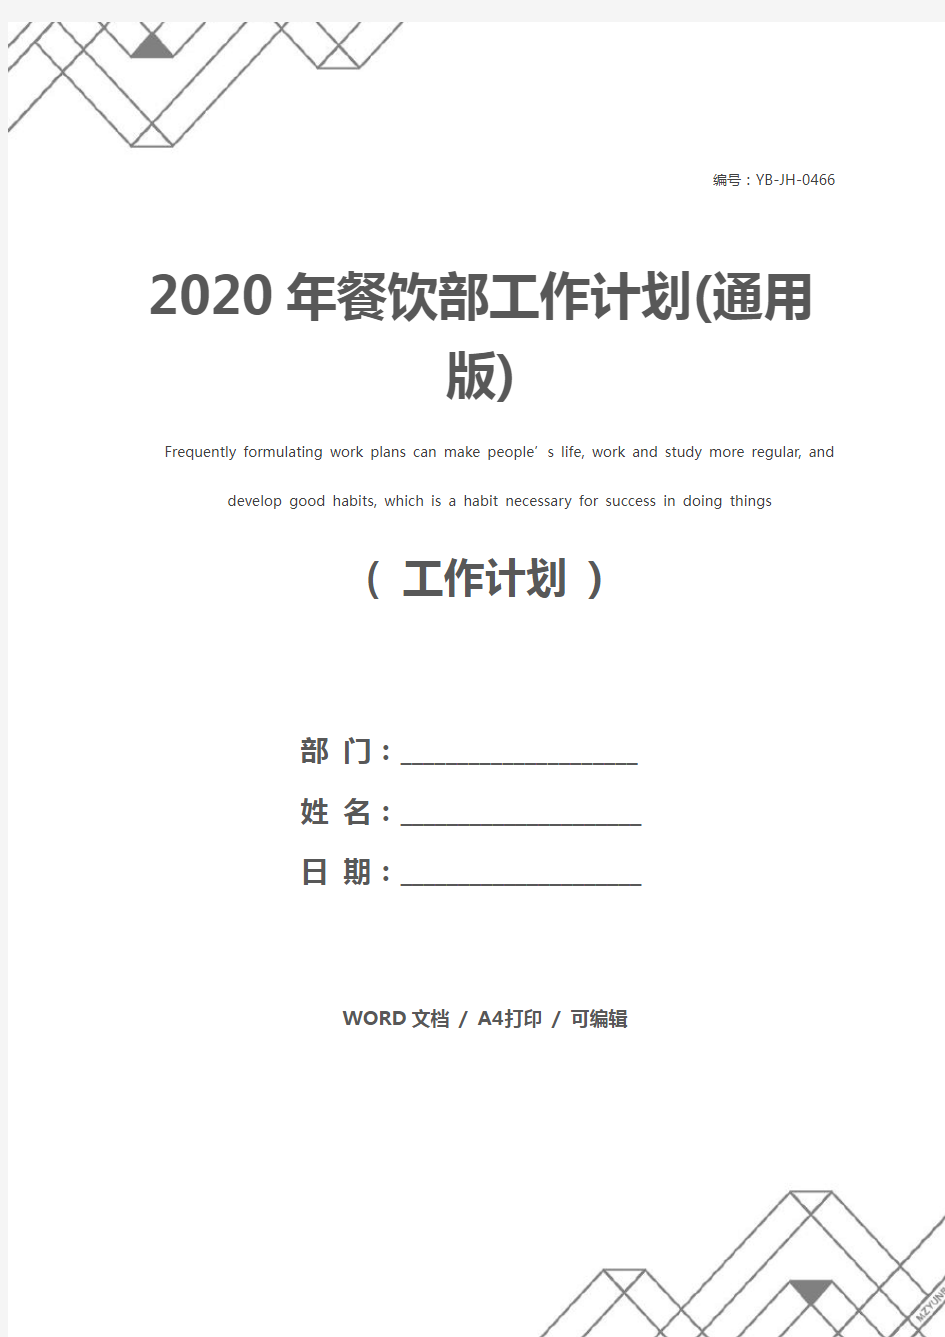 2020年餐饮部工作计划(通用版)